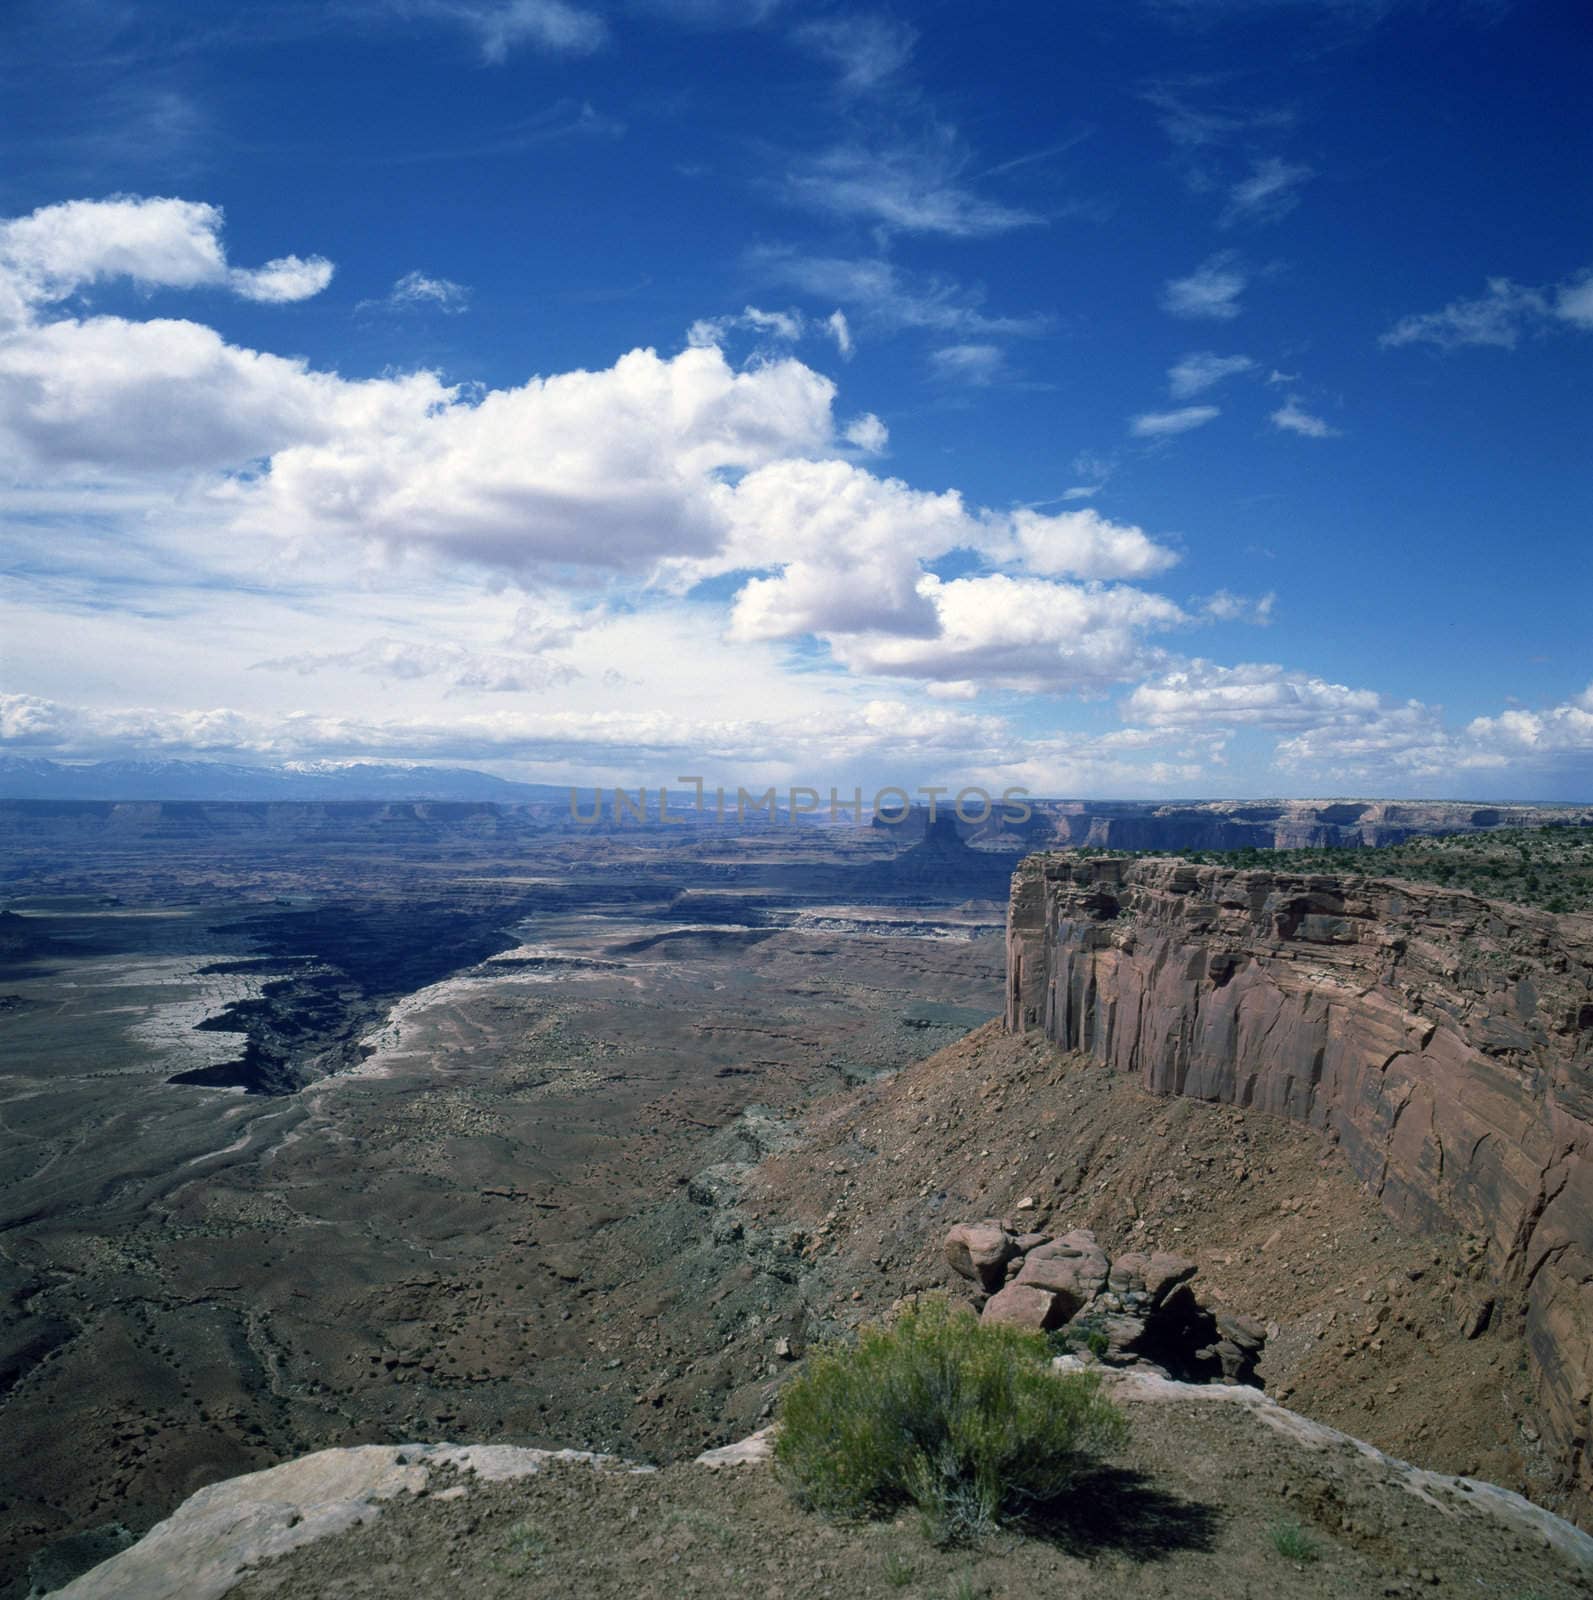 Canyonlands, Utah